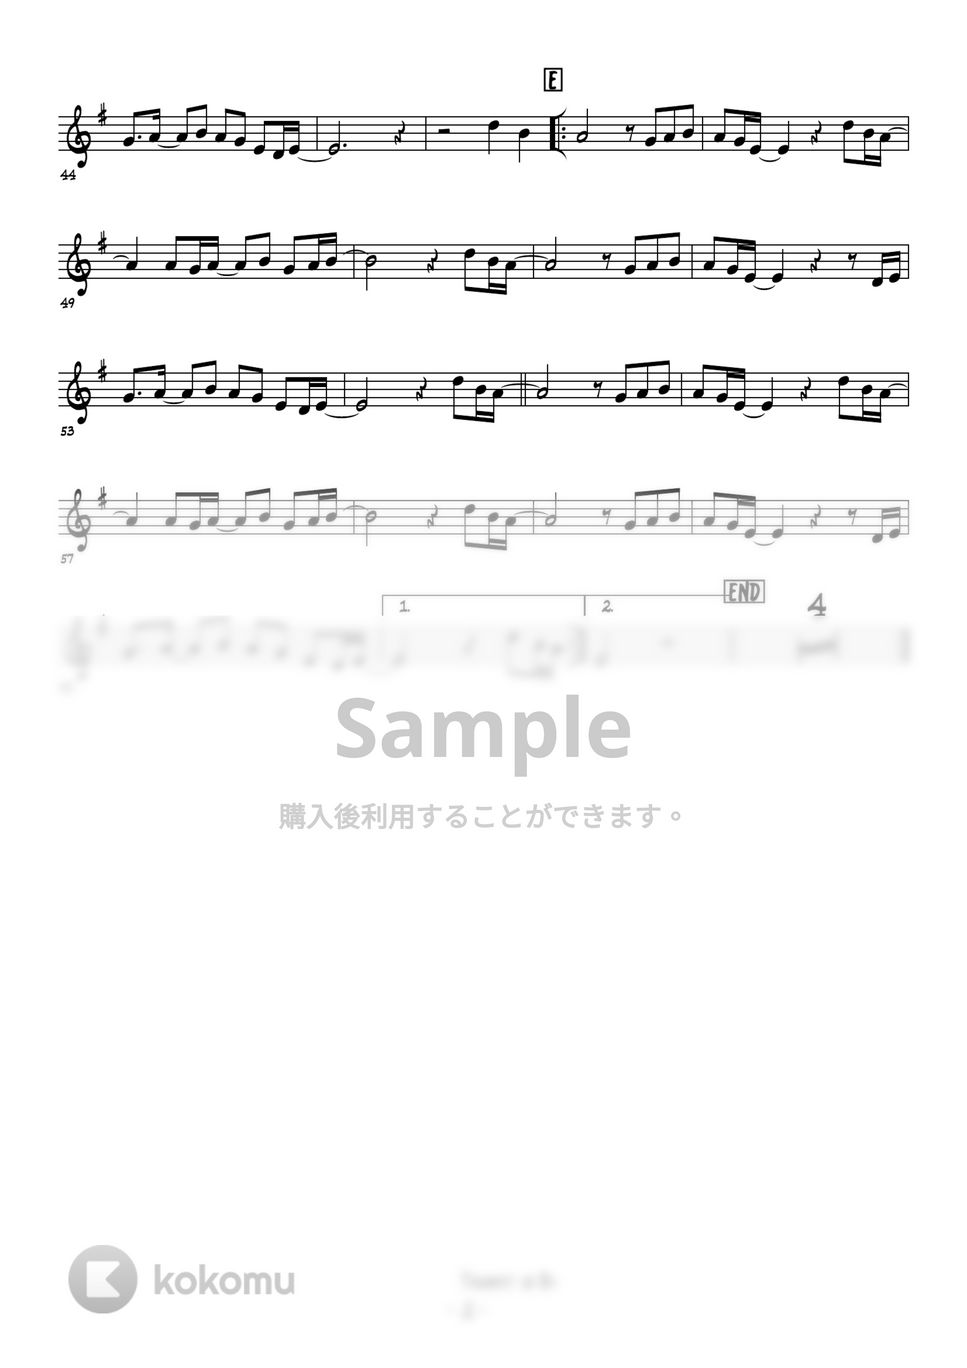 松任谷由美 - 春よ、来い (トランペットメロディー楽譜) by 高田将利